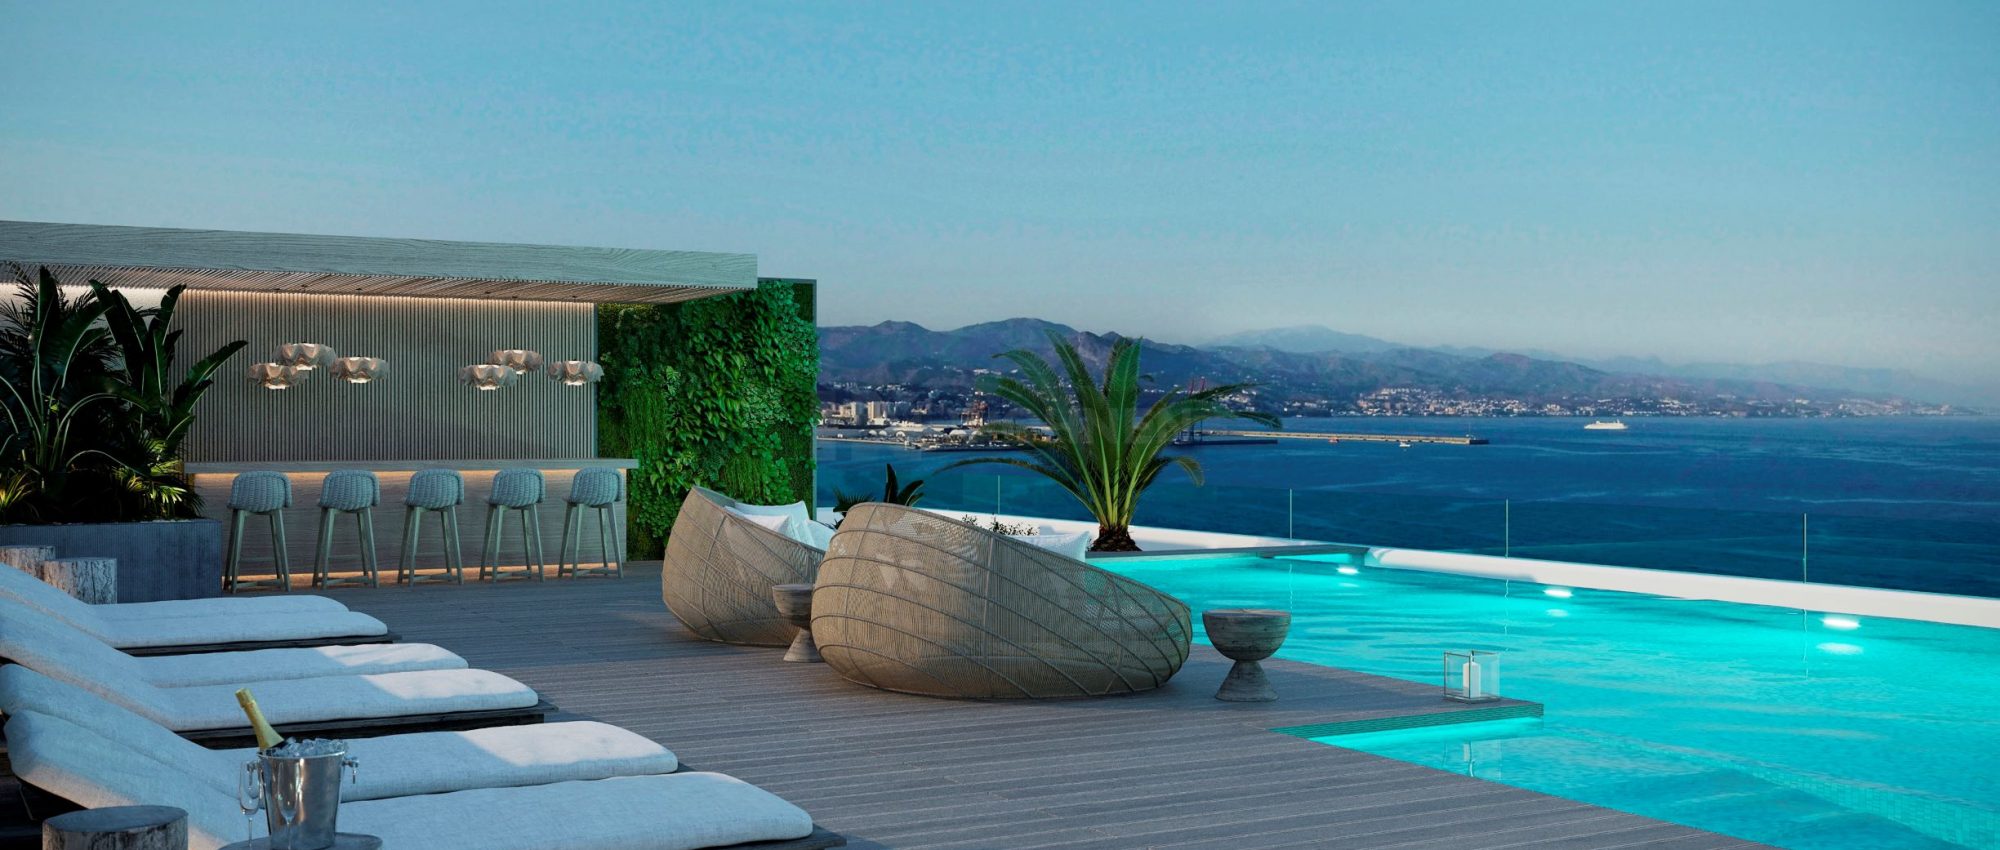 Sierra Blanca Tower – Malaga Luxuswohnungen am Strand mit Meerblick